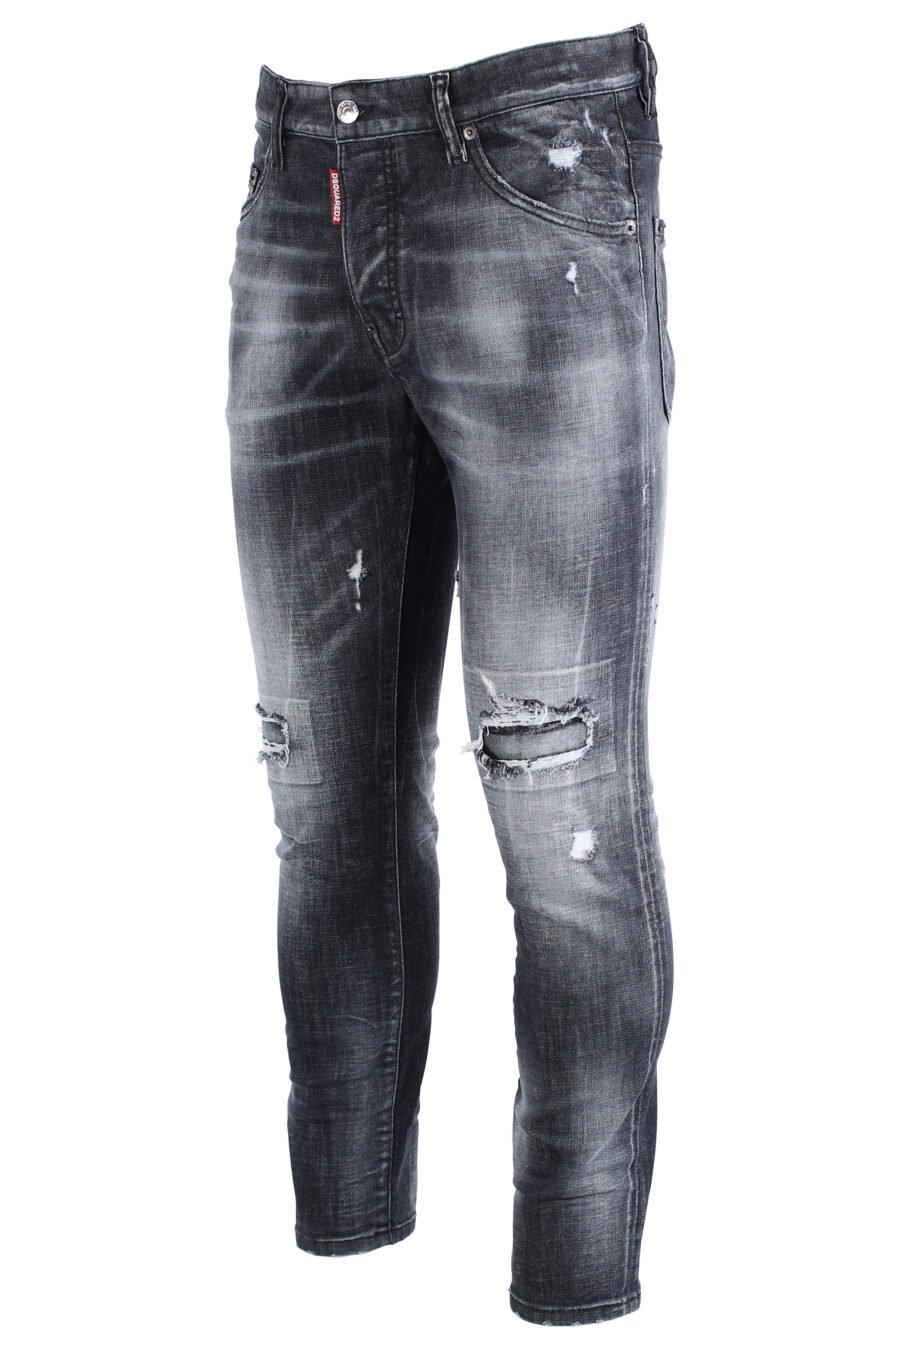 Pantalón vaquero negro con rotos "skater jean" - IMG 1604